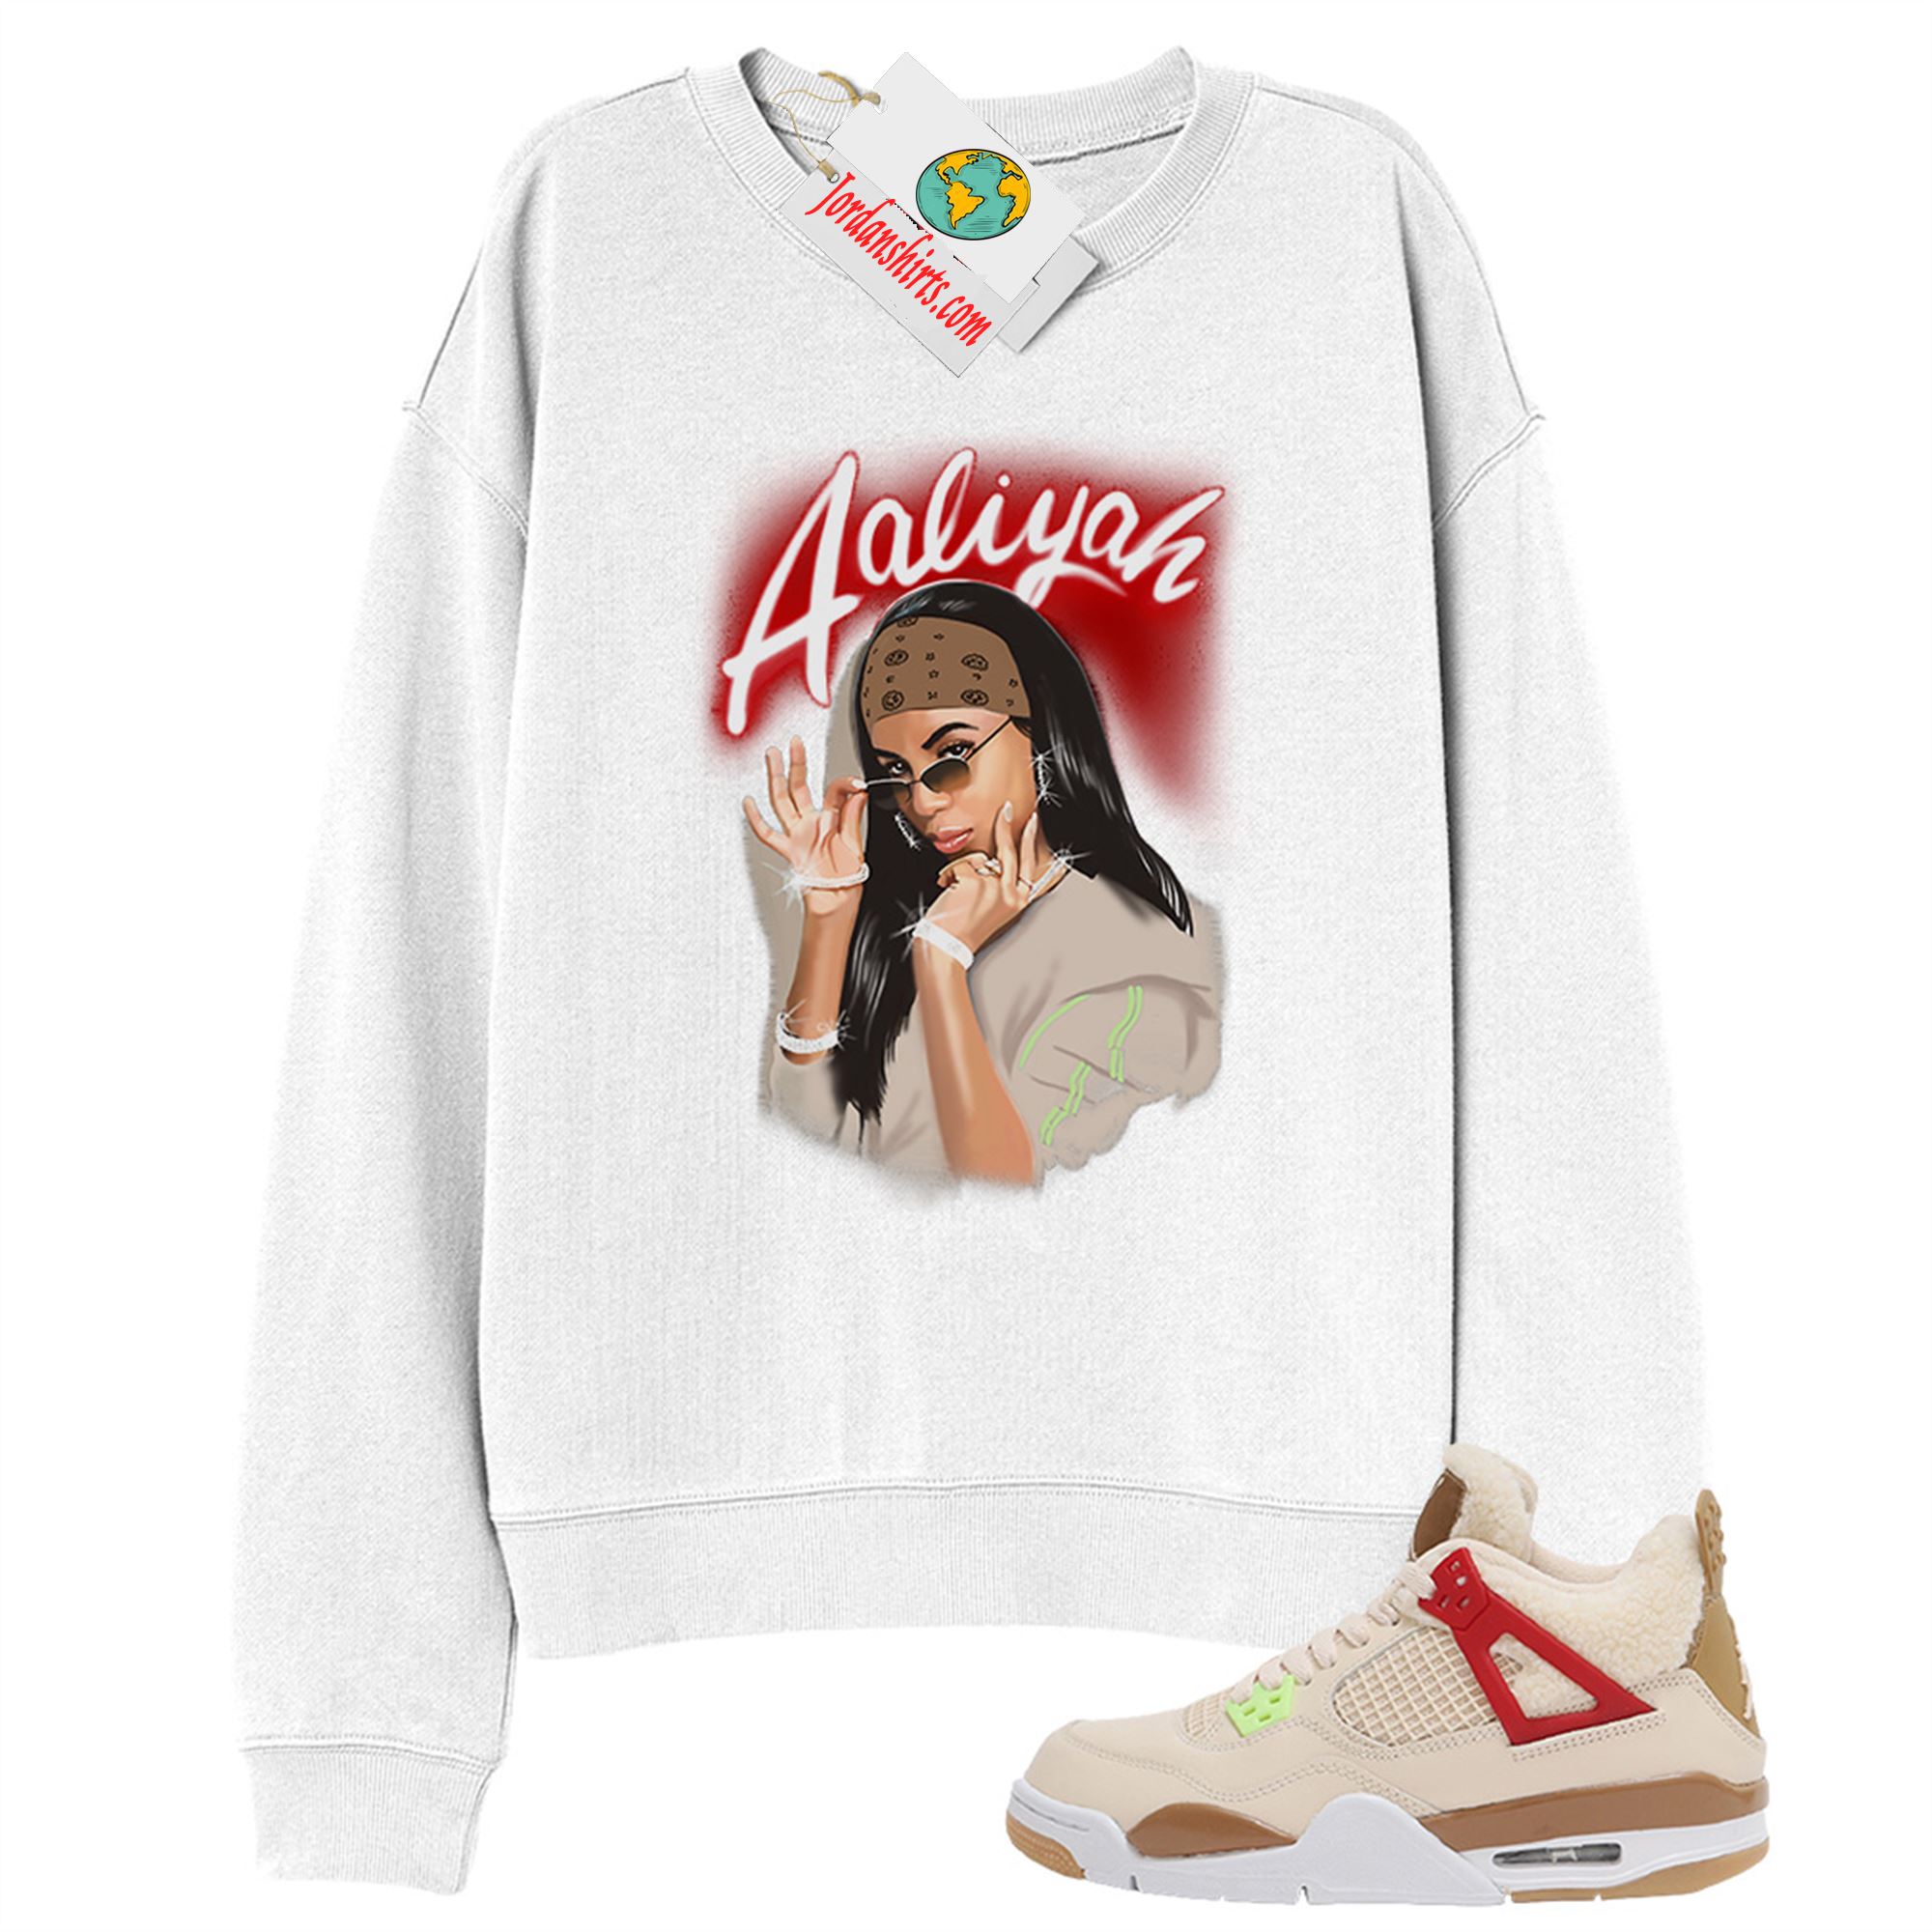 Jordan 4 Sweatshirt, Aaliyah Airbrush White Sweatshirt Air Jordan 4 Wild Thing 4s Full Size Up To 5xl